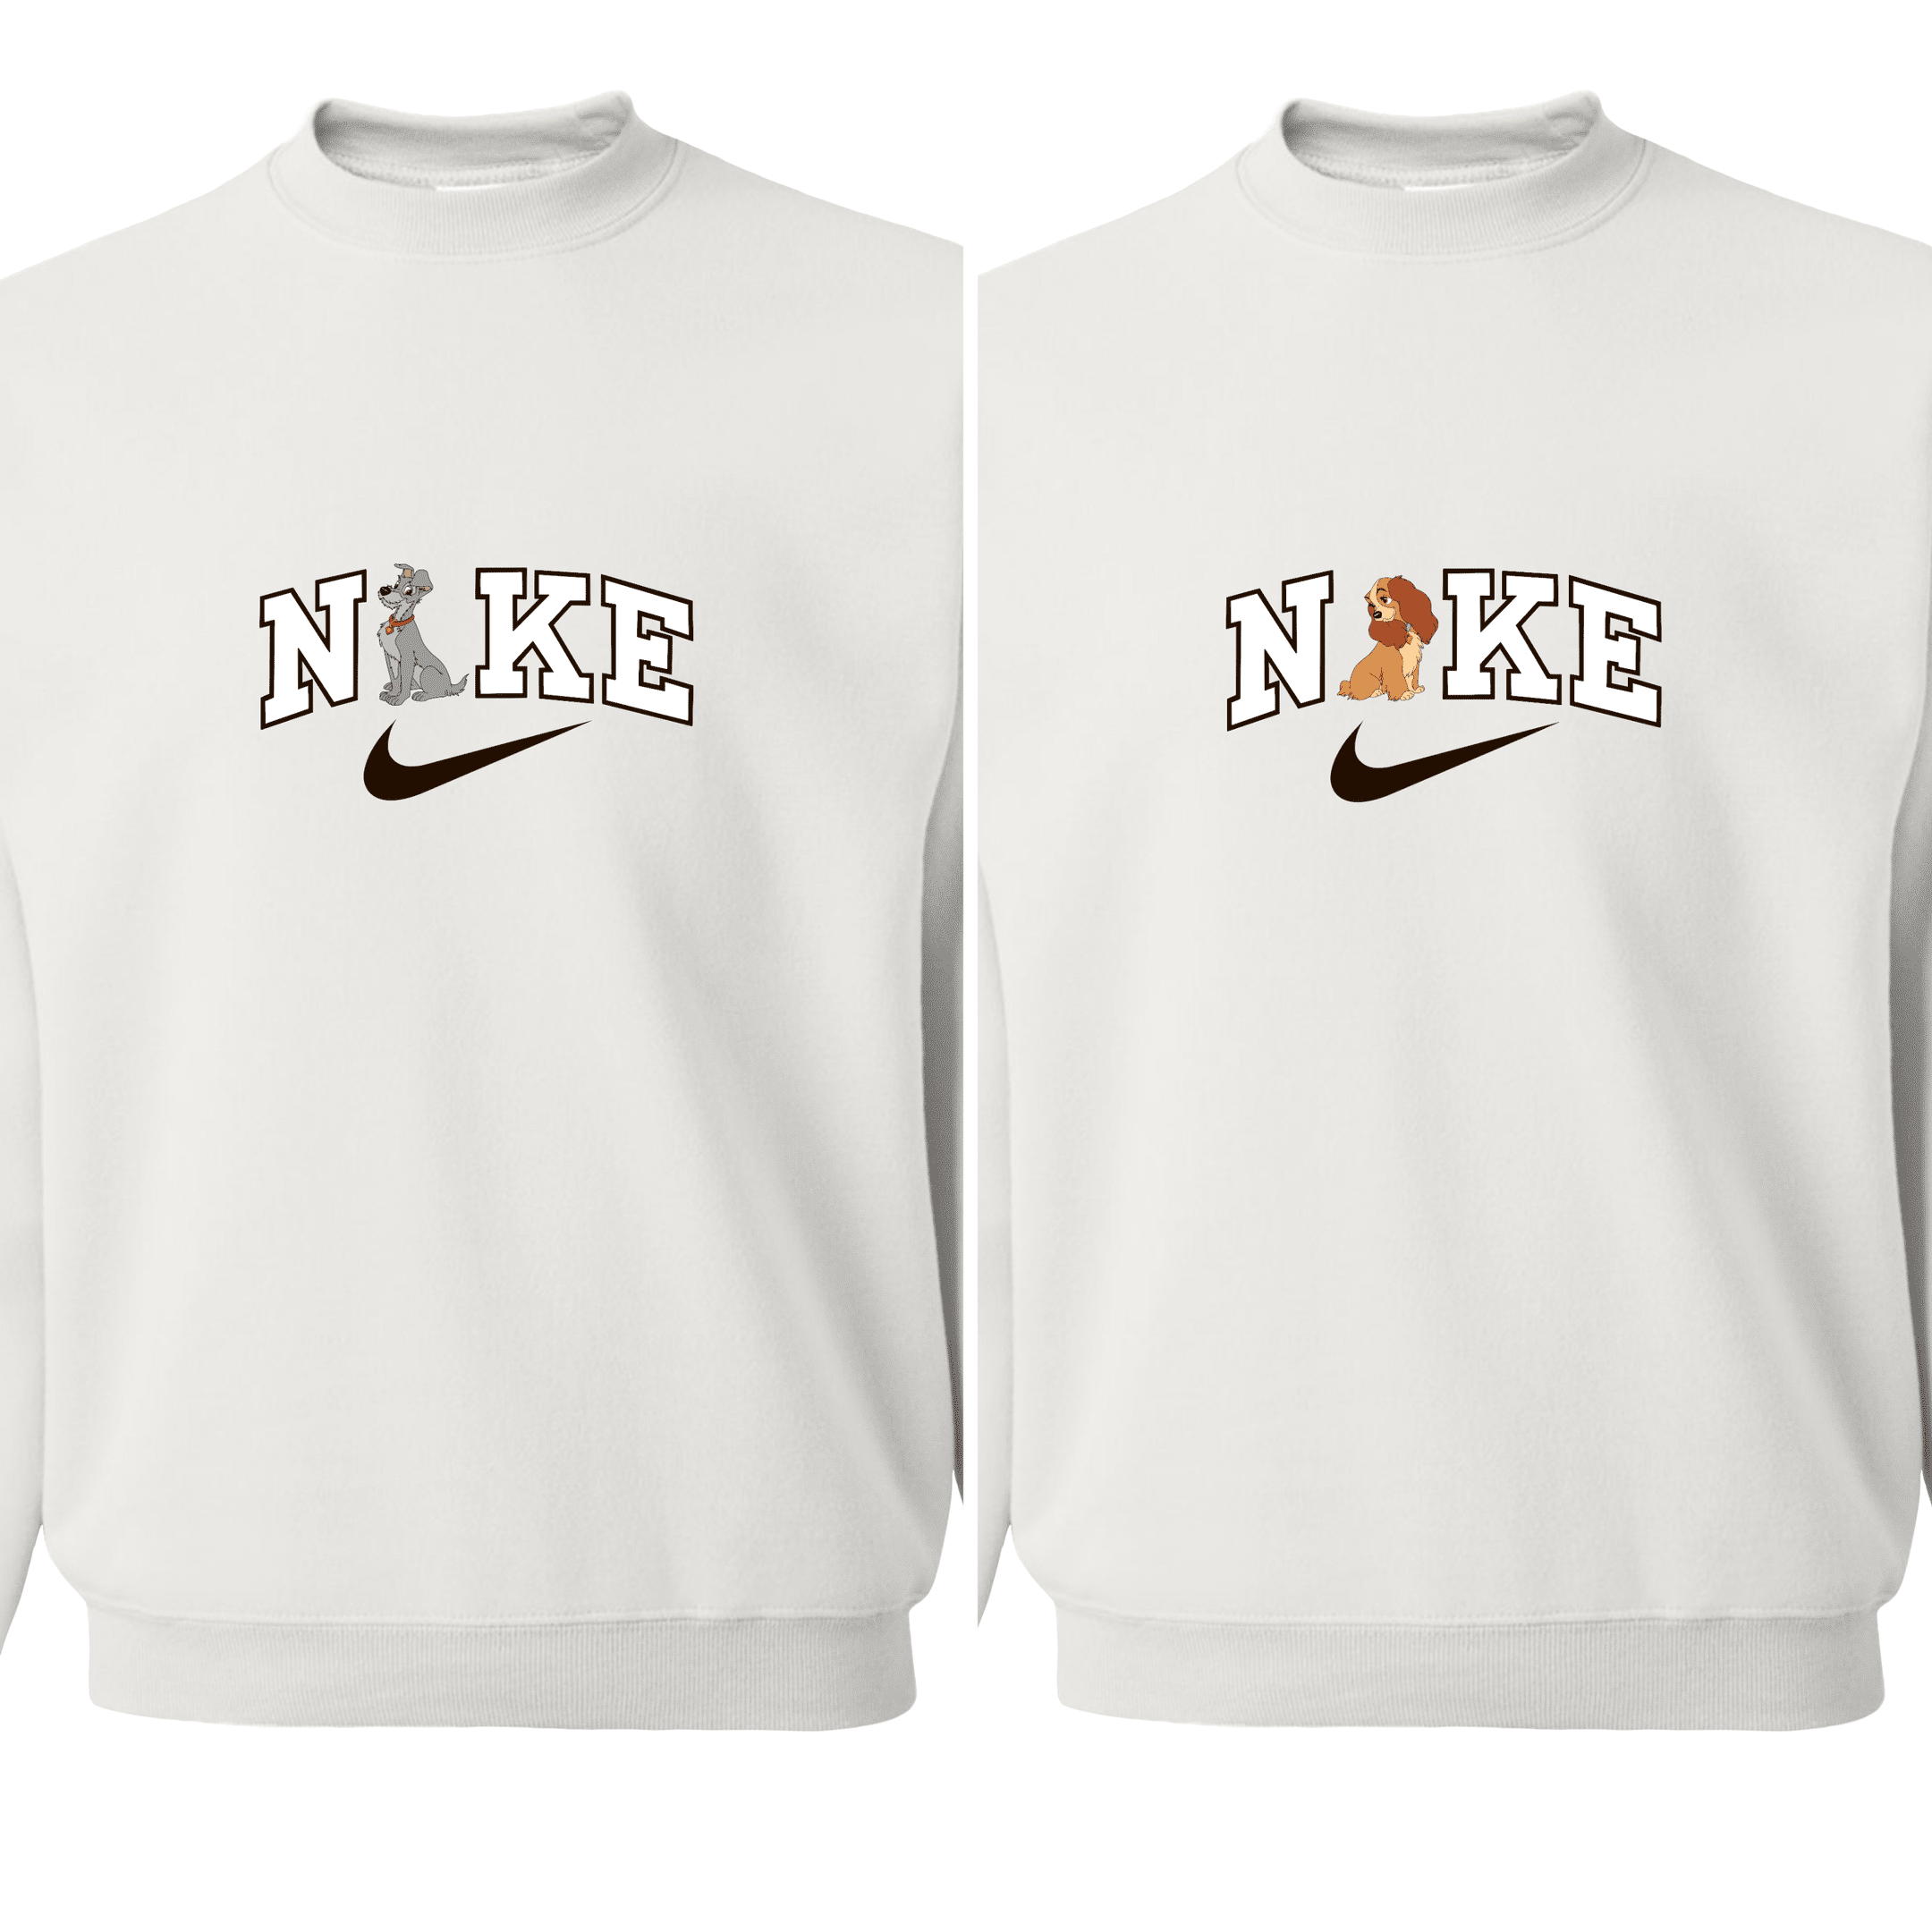 Lady & Tramp Matching Sweatshirts